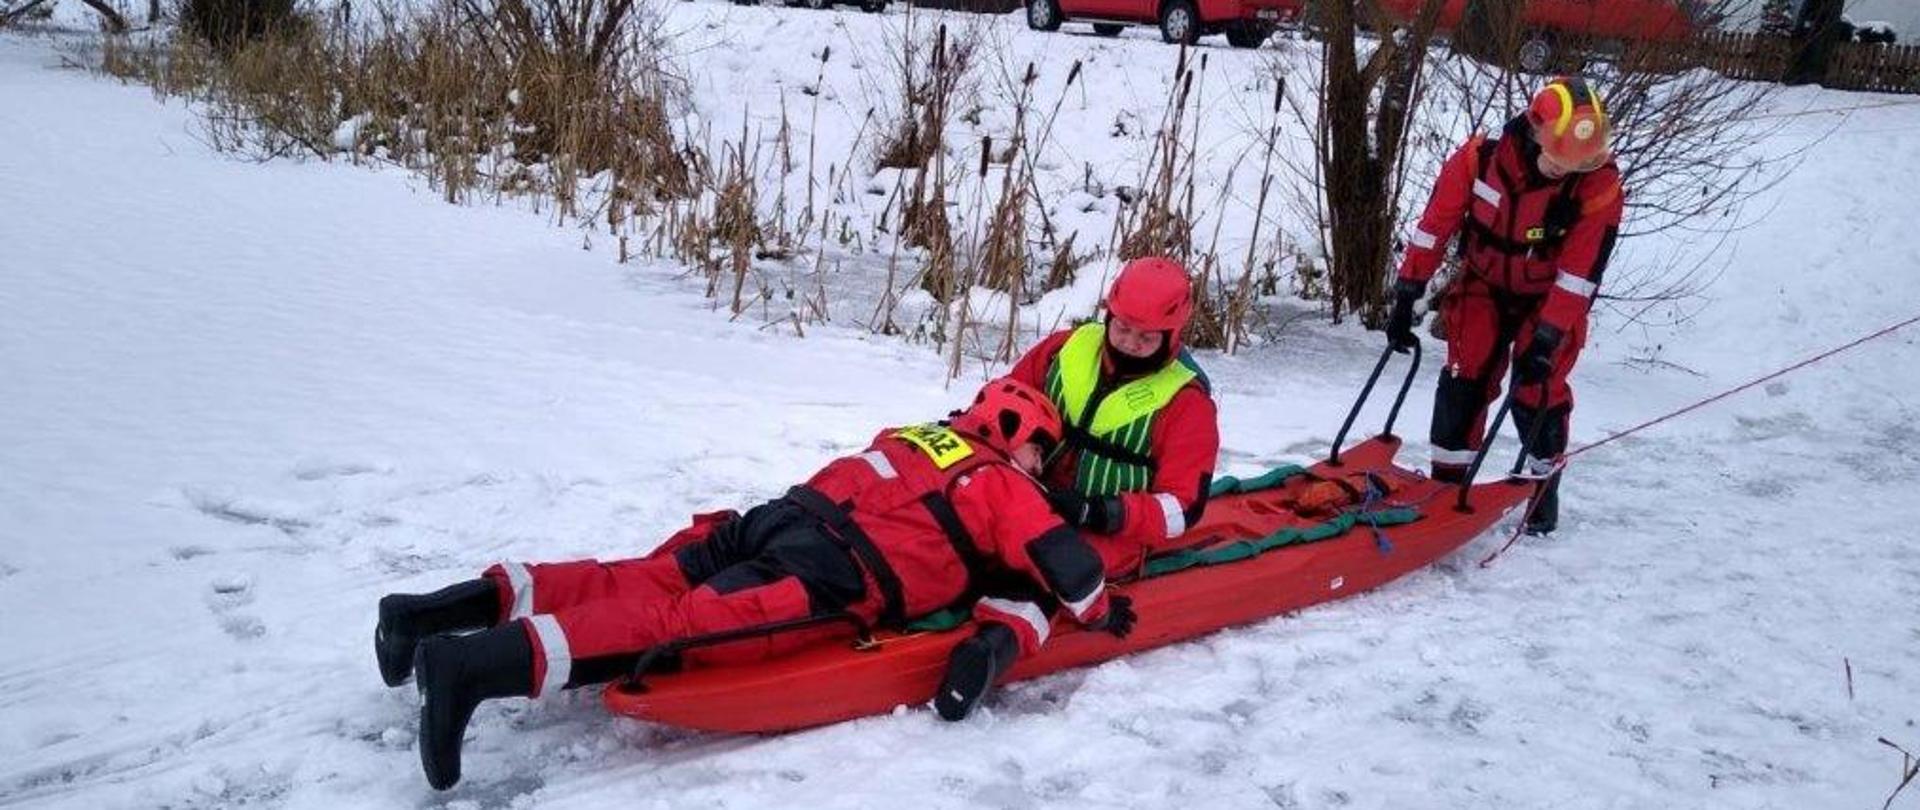 Na zdjęciu widać osobę osobę ratowaną, oraz ratowników przy brzegu jeziora. Ratownicy ubrani w kombinezony niezatapialne, poszkodowany znajduje się na desce lodowej. Obydwaj przypięci są linką asekuracyjną. 